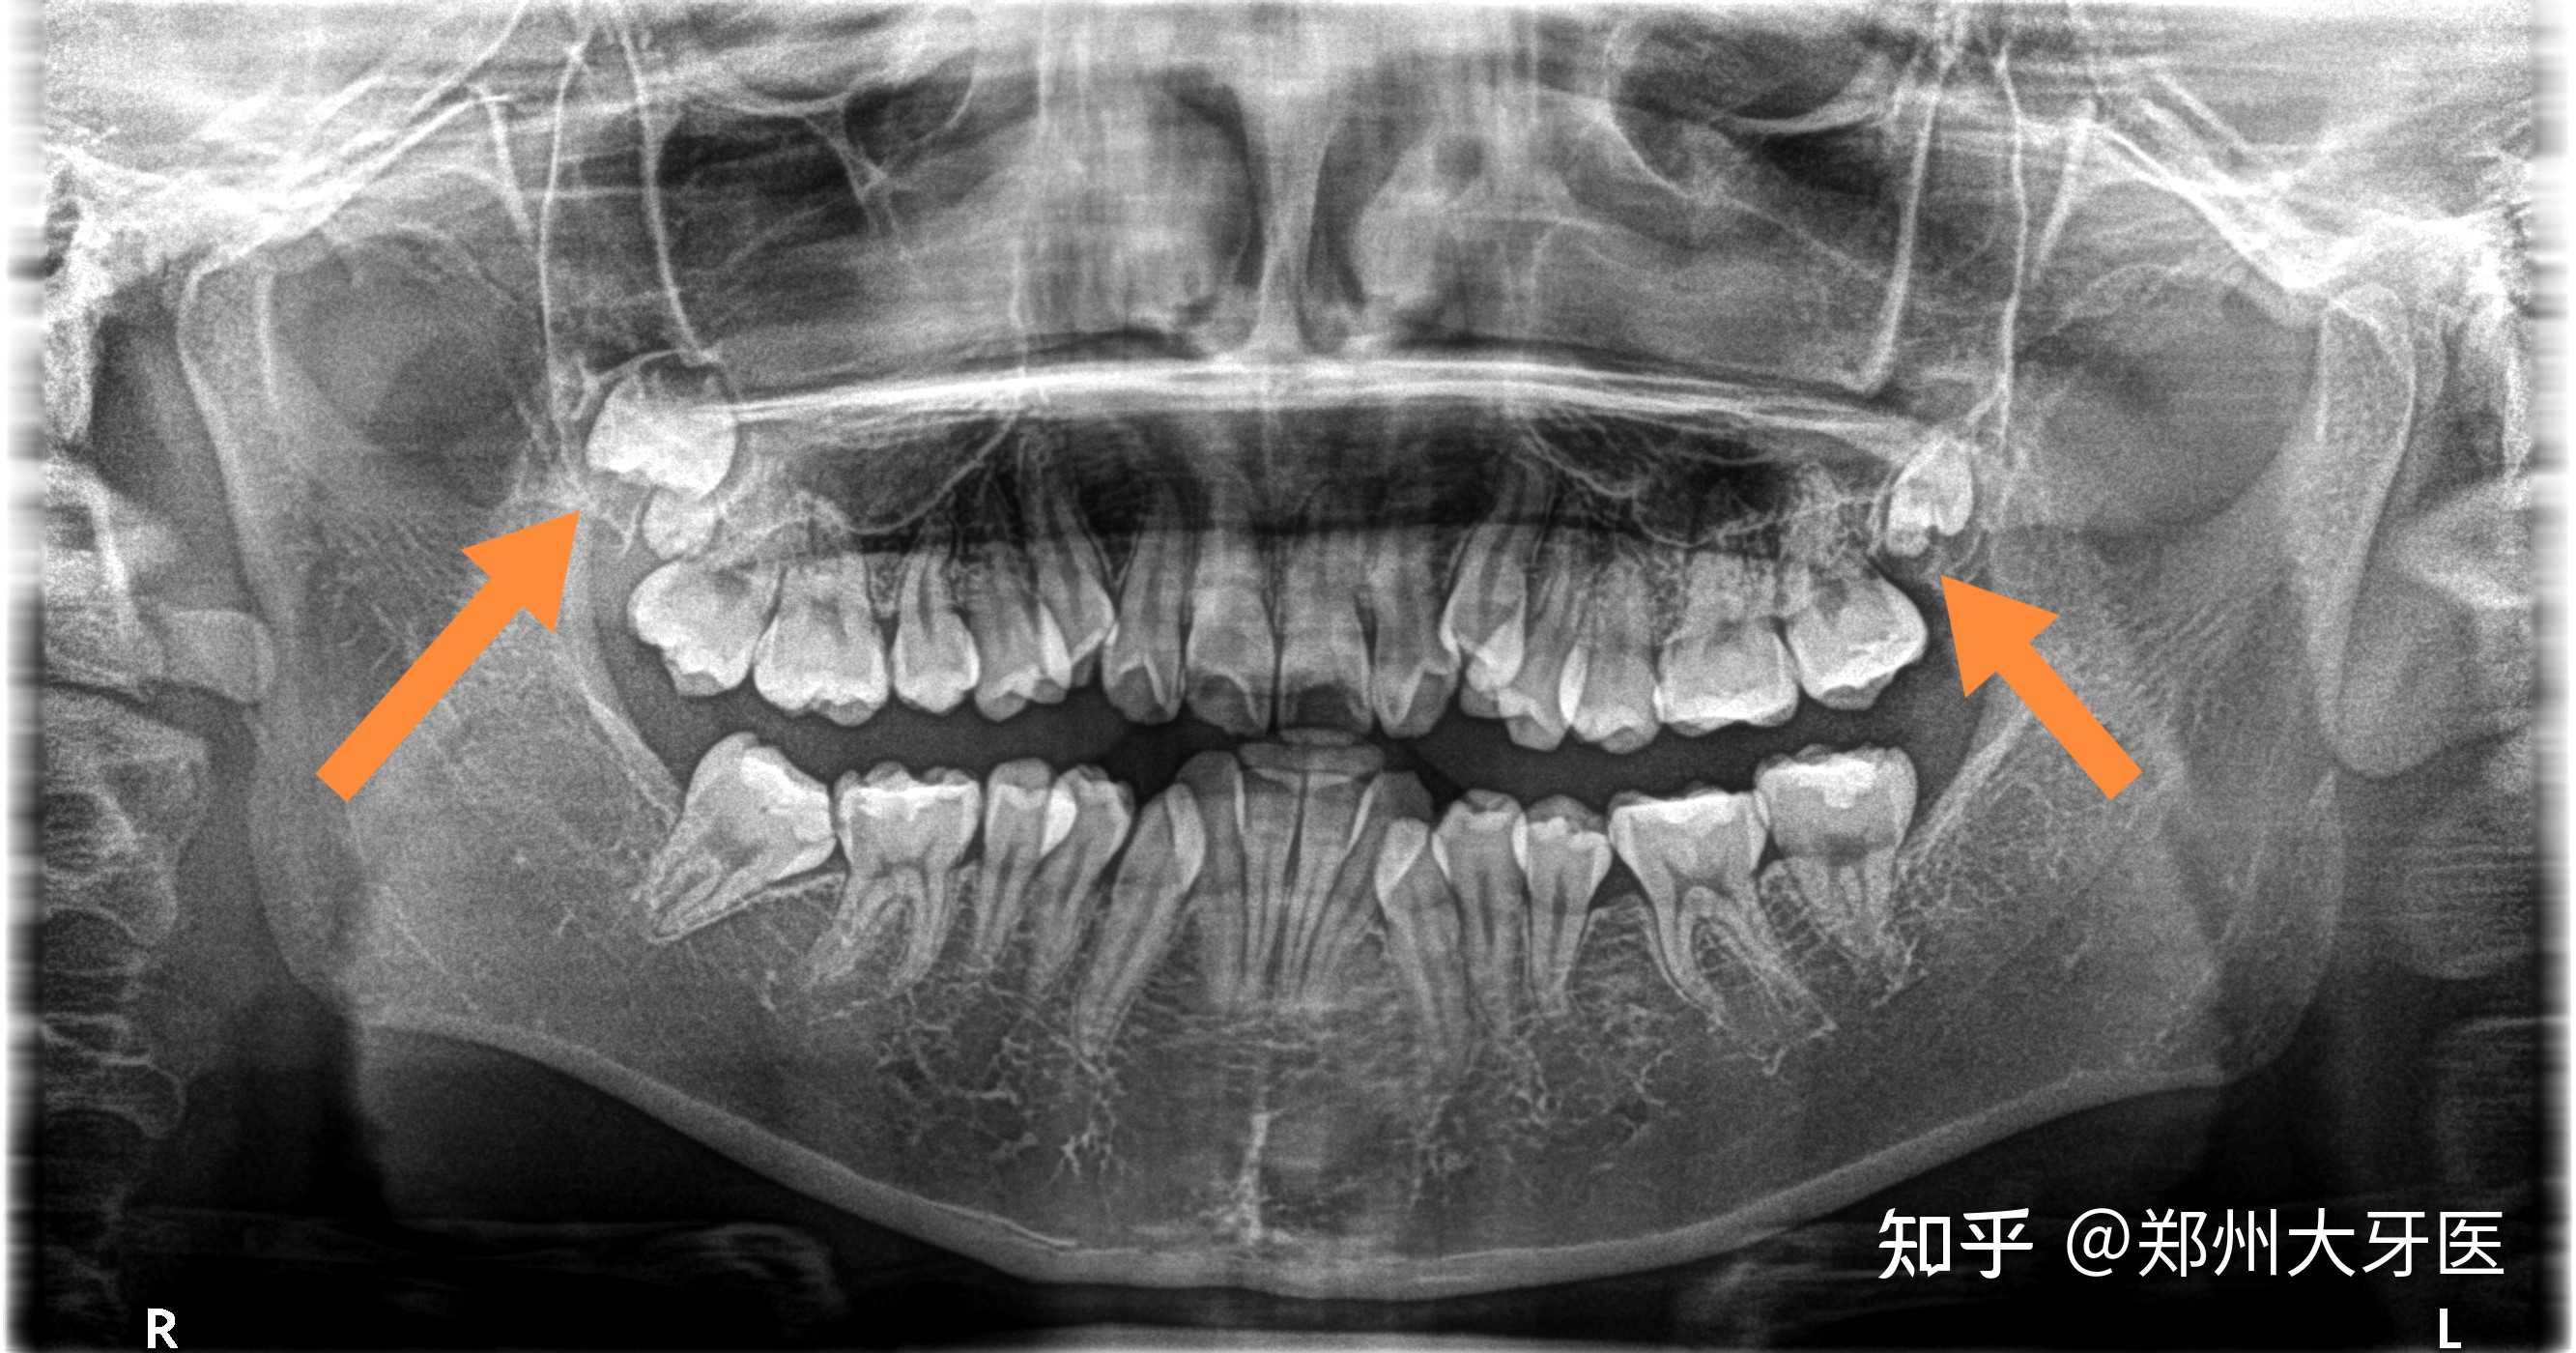 郑州大牙医 的想法: 高位智齿,紧贴上颌窦,风险比较高